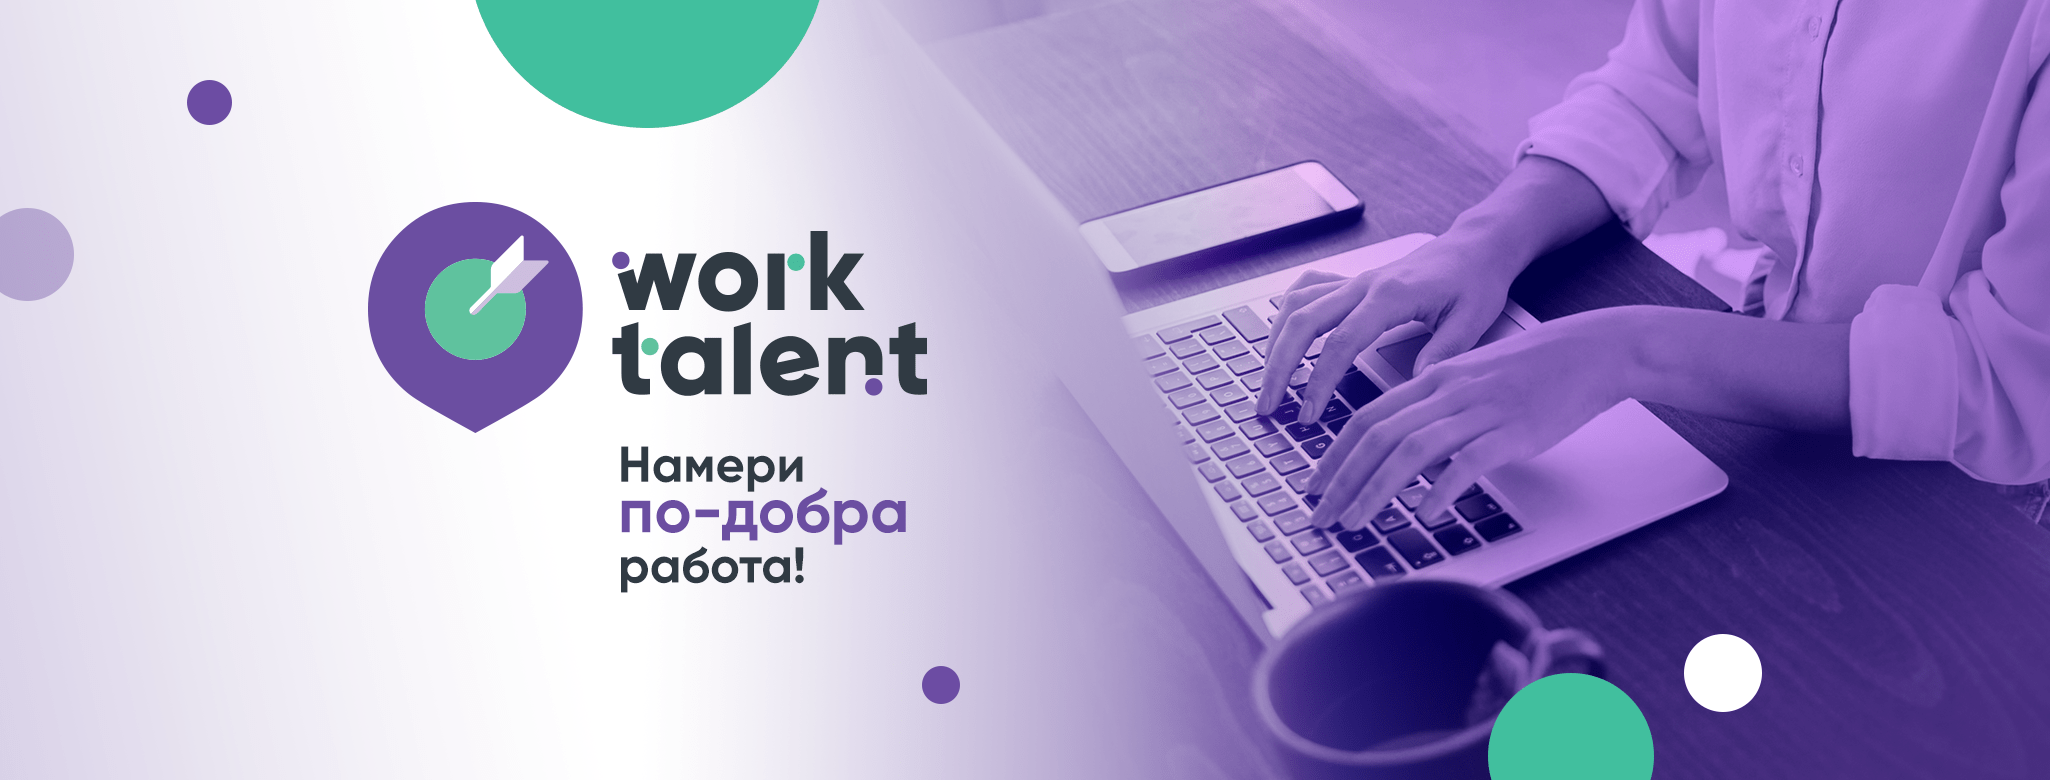 WorkTalent - новата платформа за работа и стаж